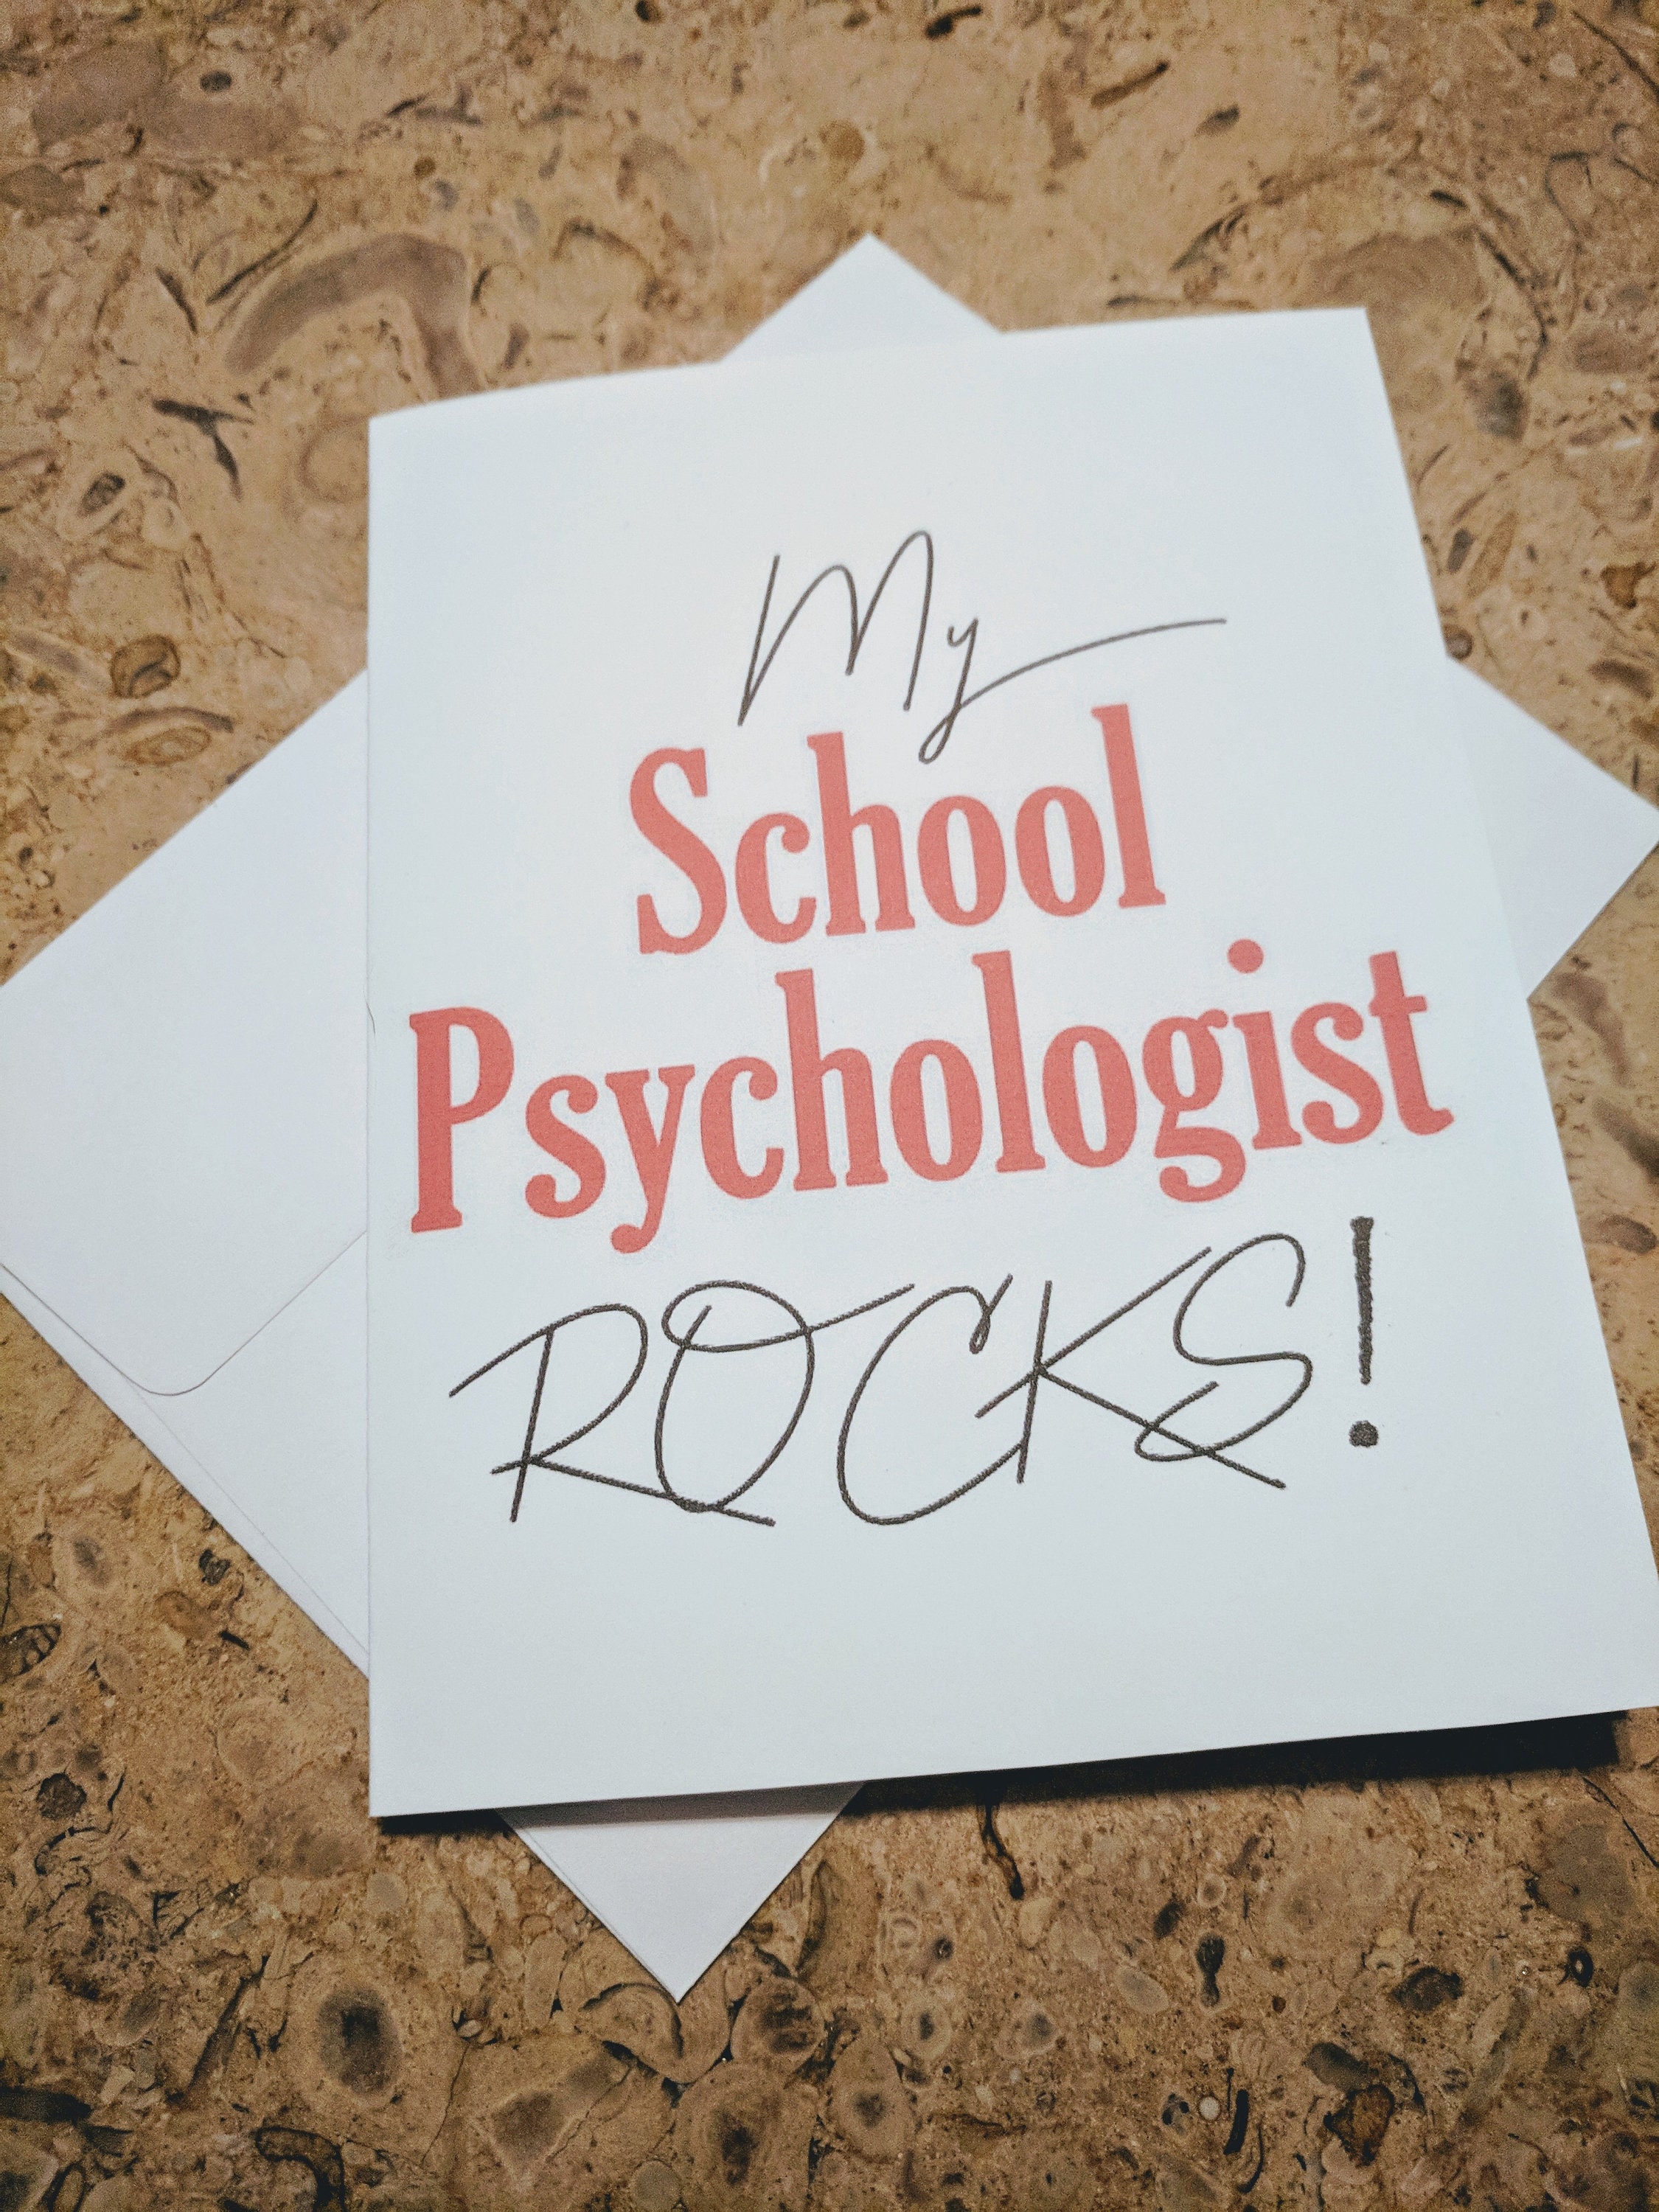 My School Psychologist Rocks appreciation card thank you Etsy